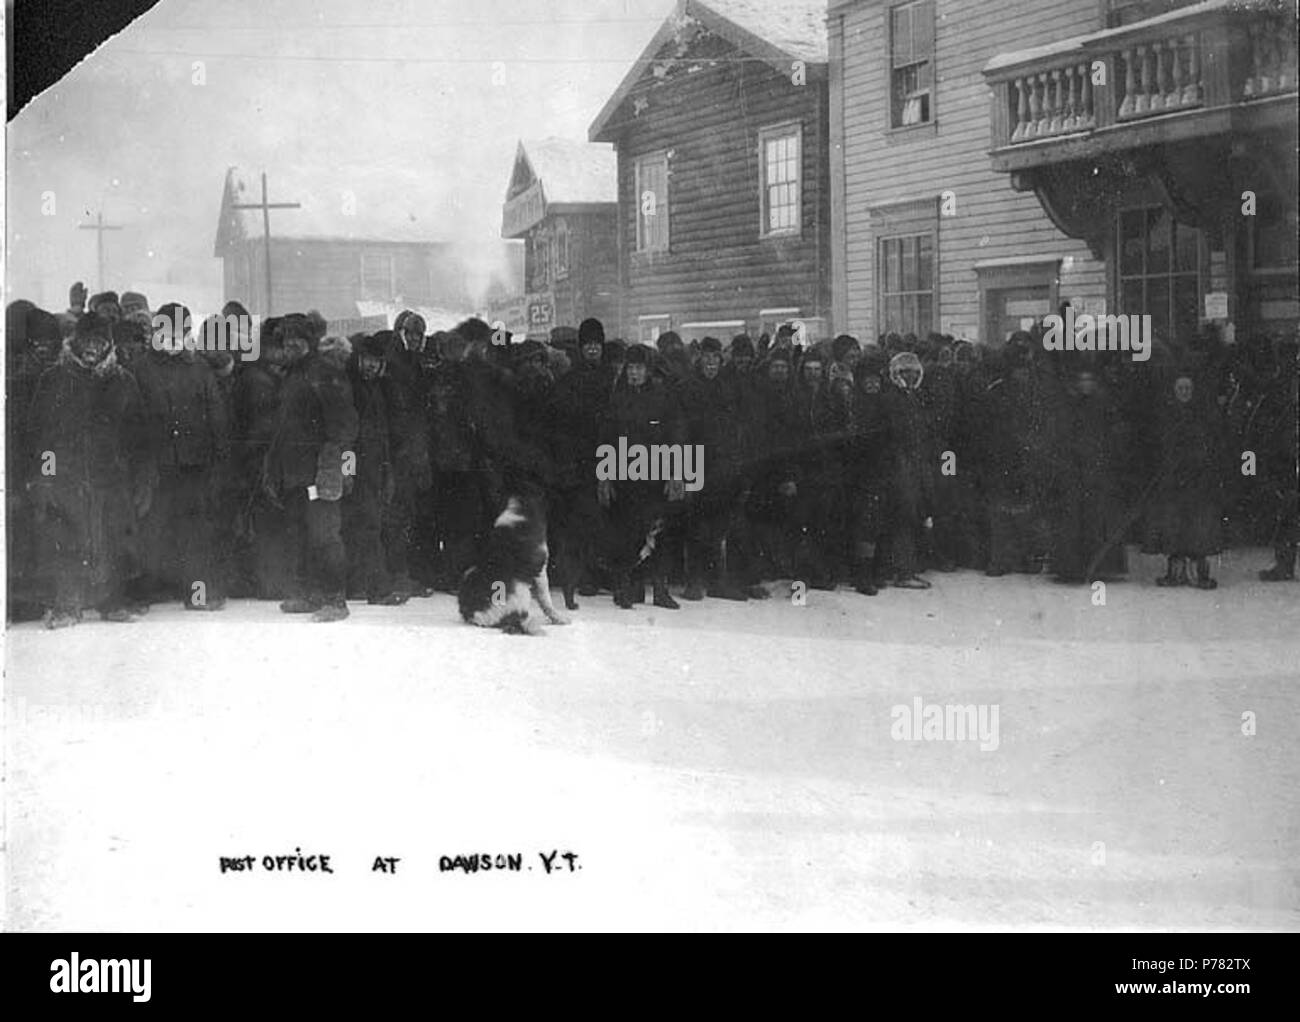 . Englisch: Post bei Dawson City, Yukon Territory, Ca. 1898. Englisch: Zeigt die lange Linie der Männer außerhalb der Post im Winter. Bildunterschrift auf das Bild: "Post an DawsonY.T.' Themen (LCTGM): Post---- Yukon Dawson; Warteschlangen---- Yukon Dawson. ca. 1898 11 Post bei Dawson City, Yukon Territory, ca 1898 HEGG (444) Stockfoto